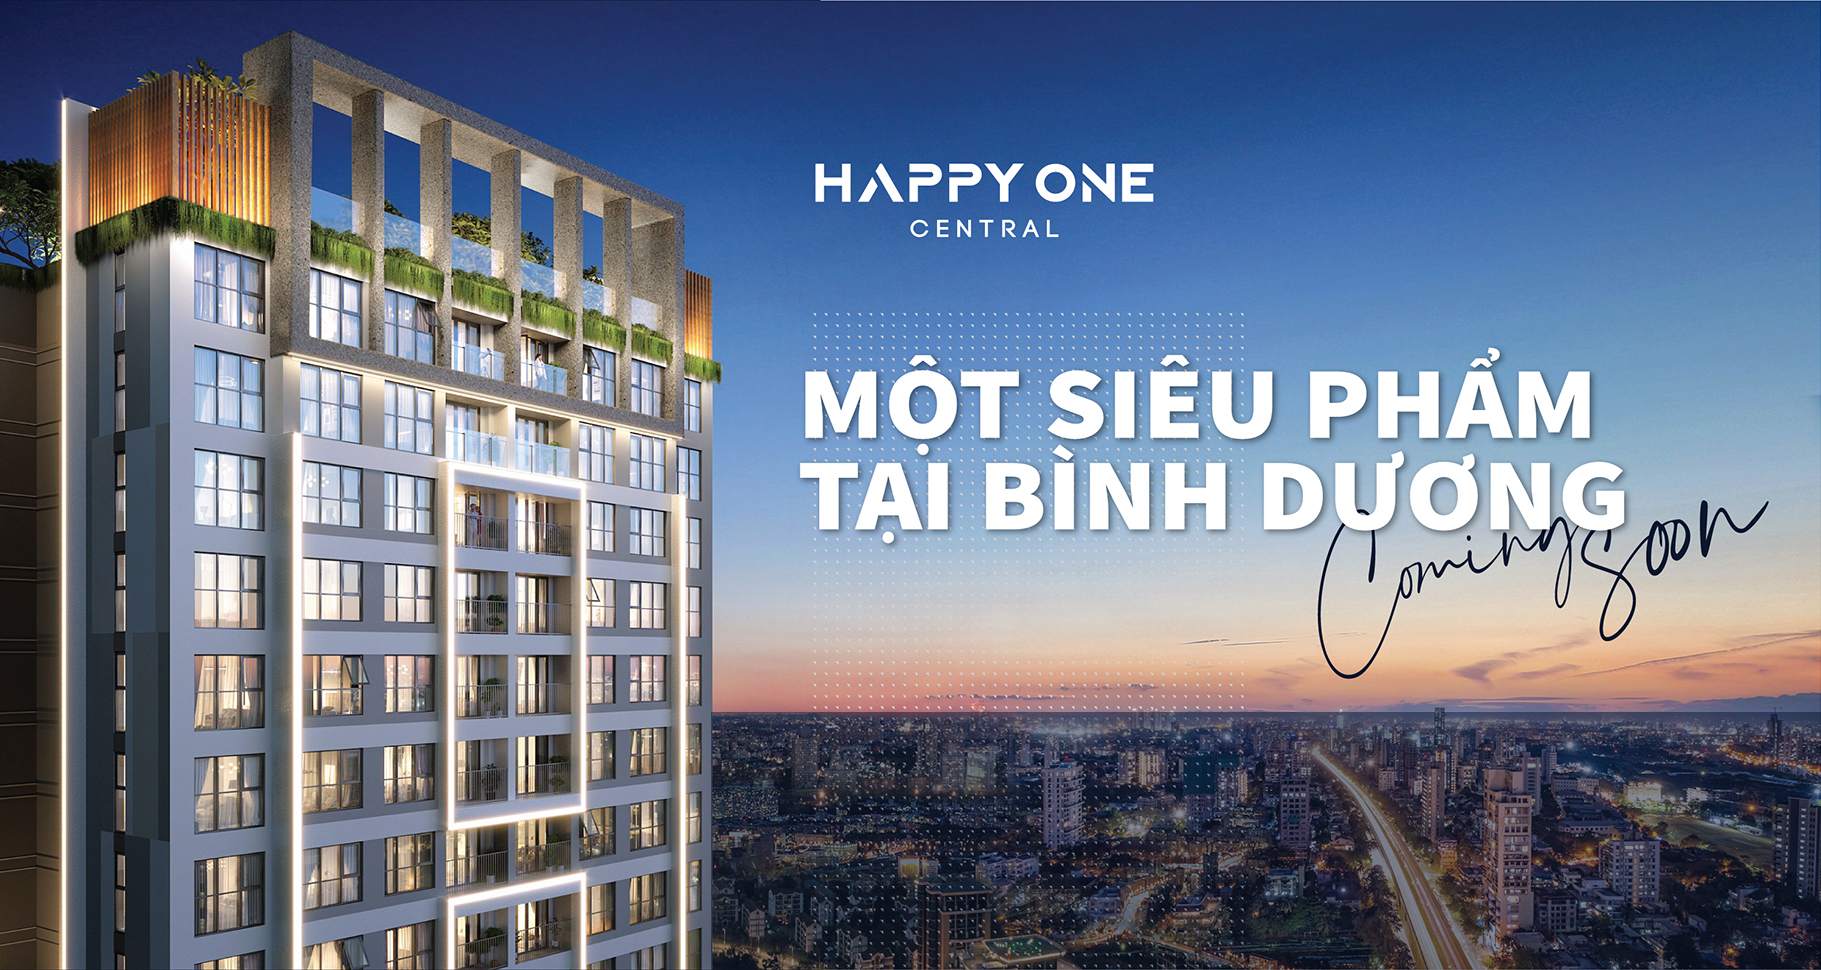 Happy One Central Bình Dương -【Website Chính Thức】